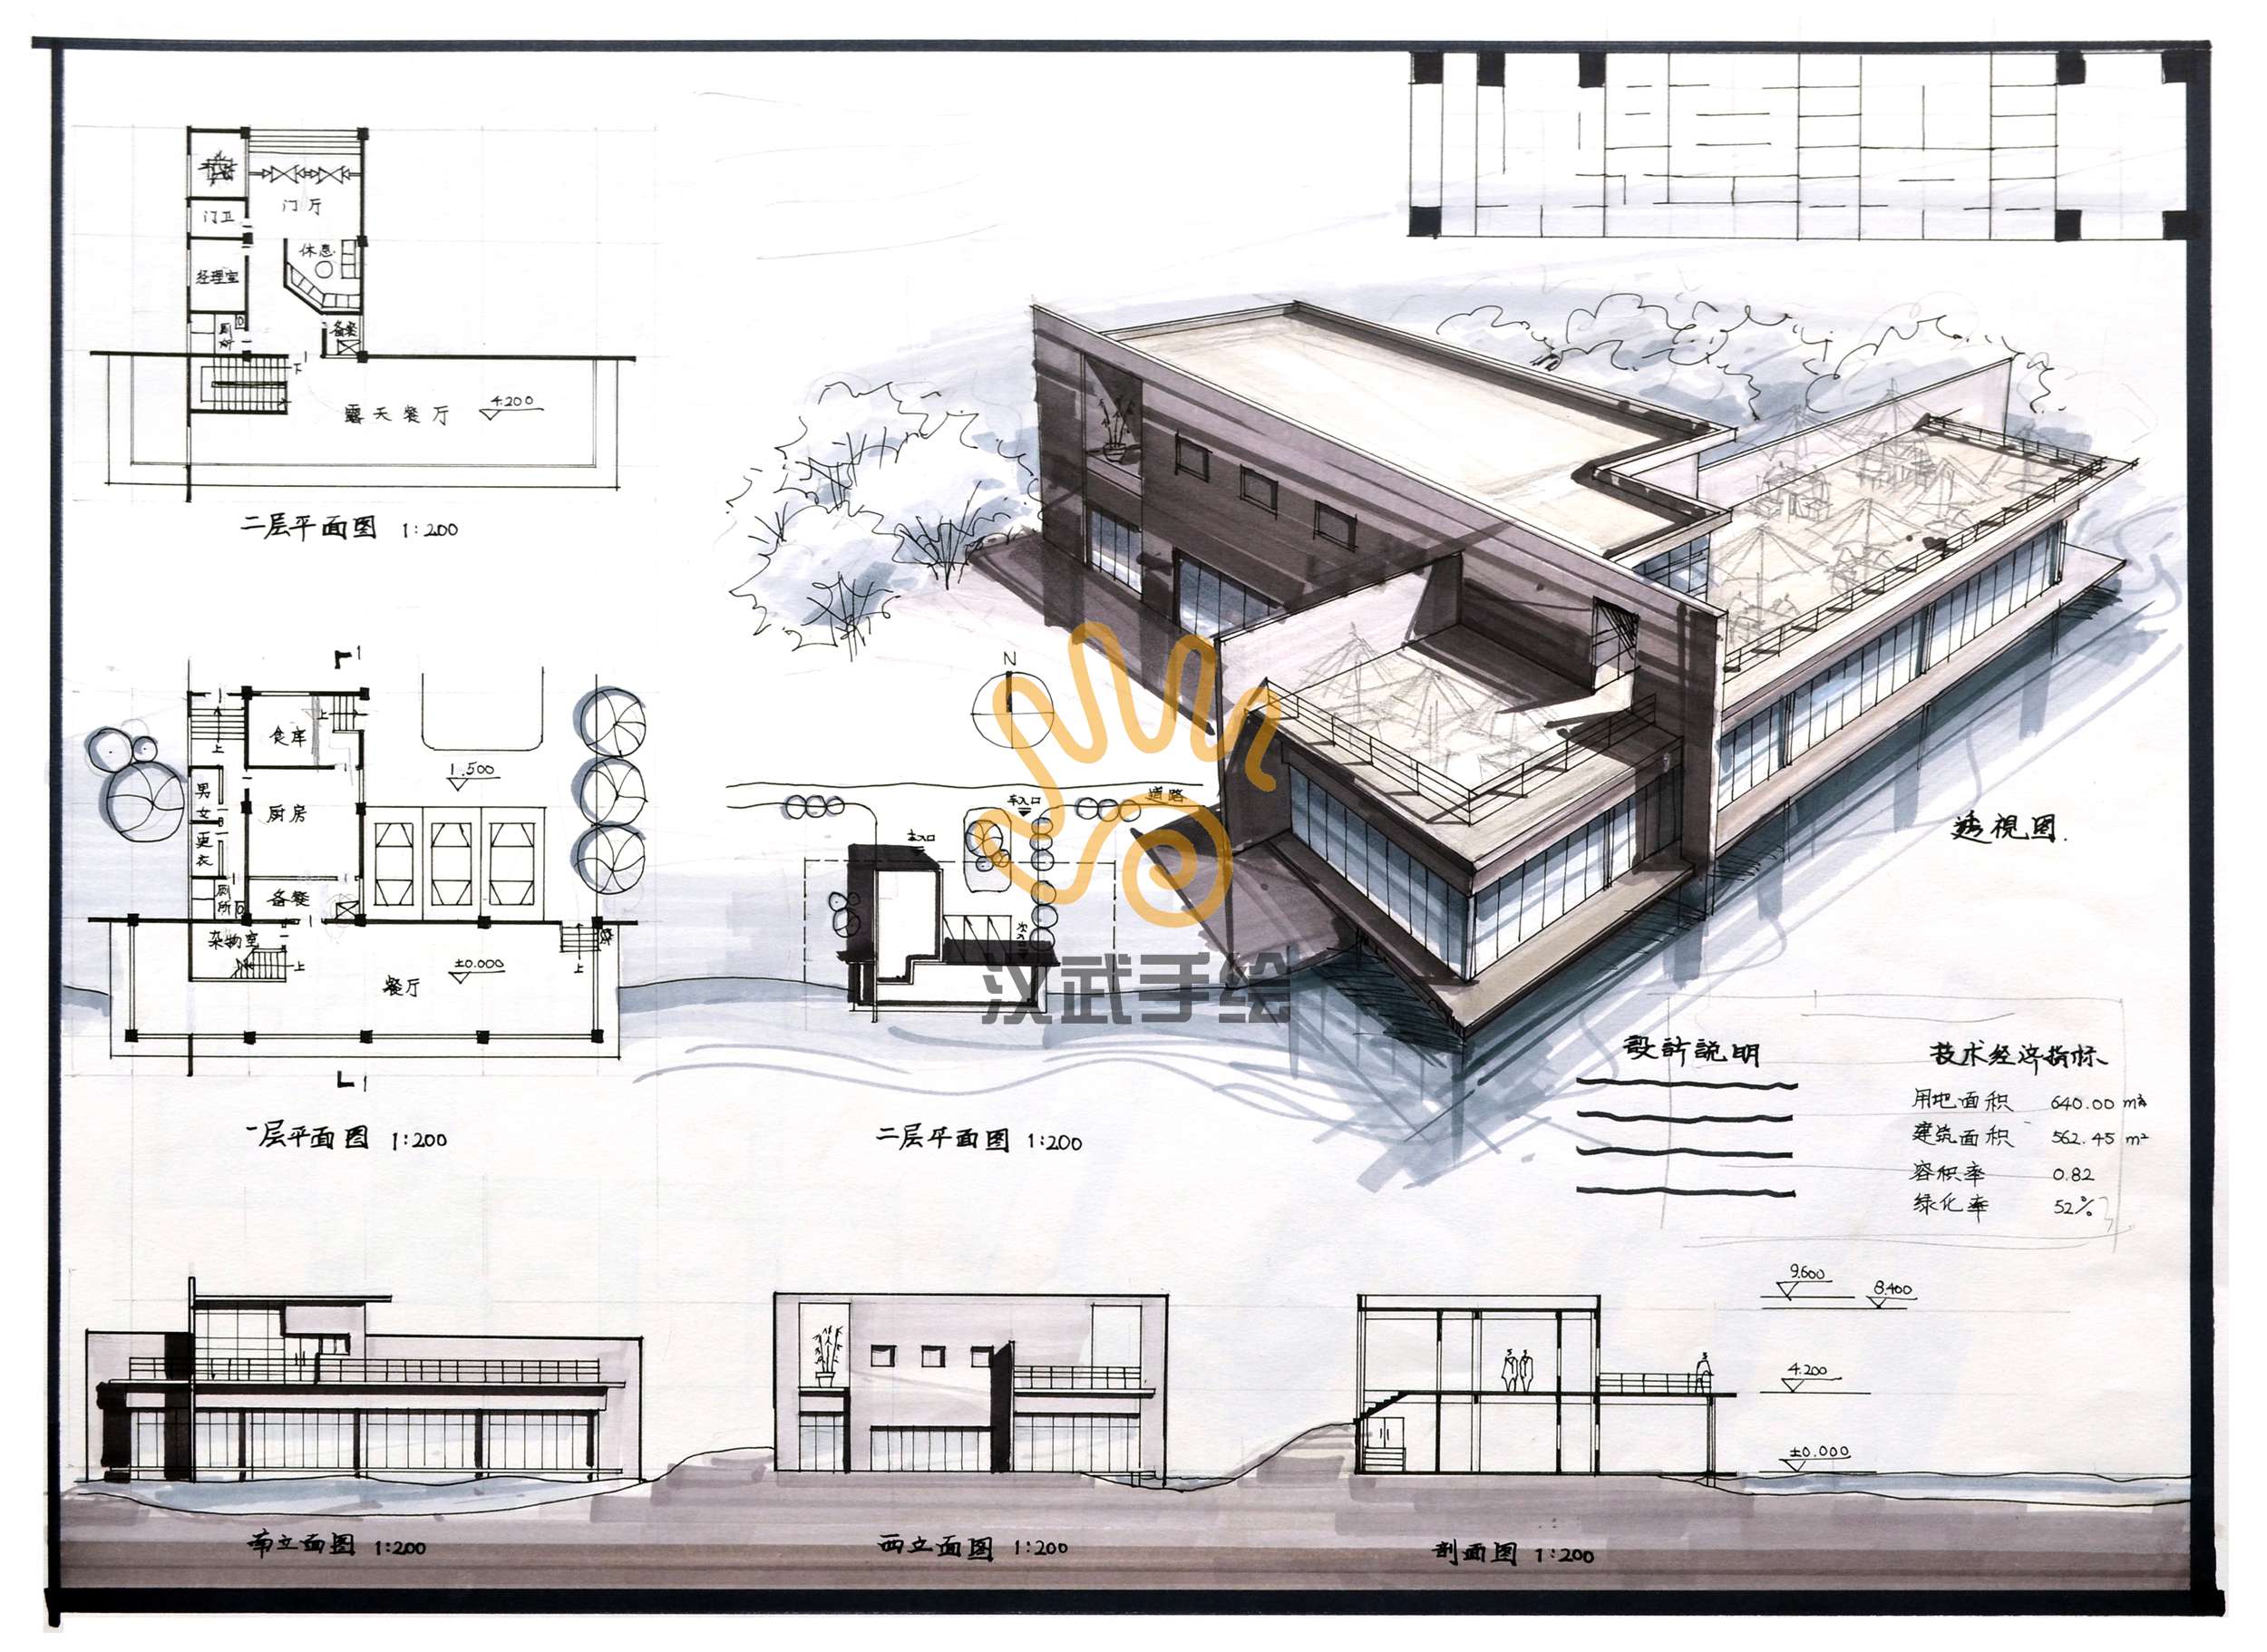 E星体育建筑设计项目商业计划书